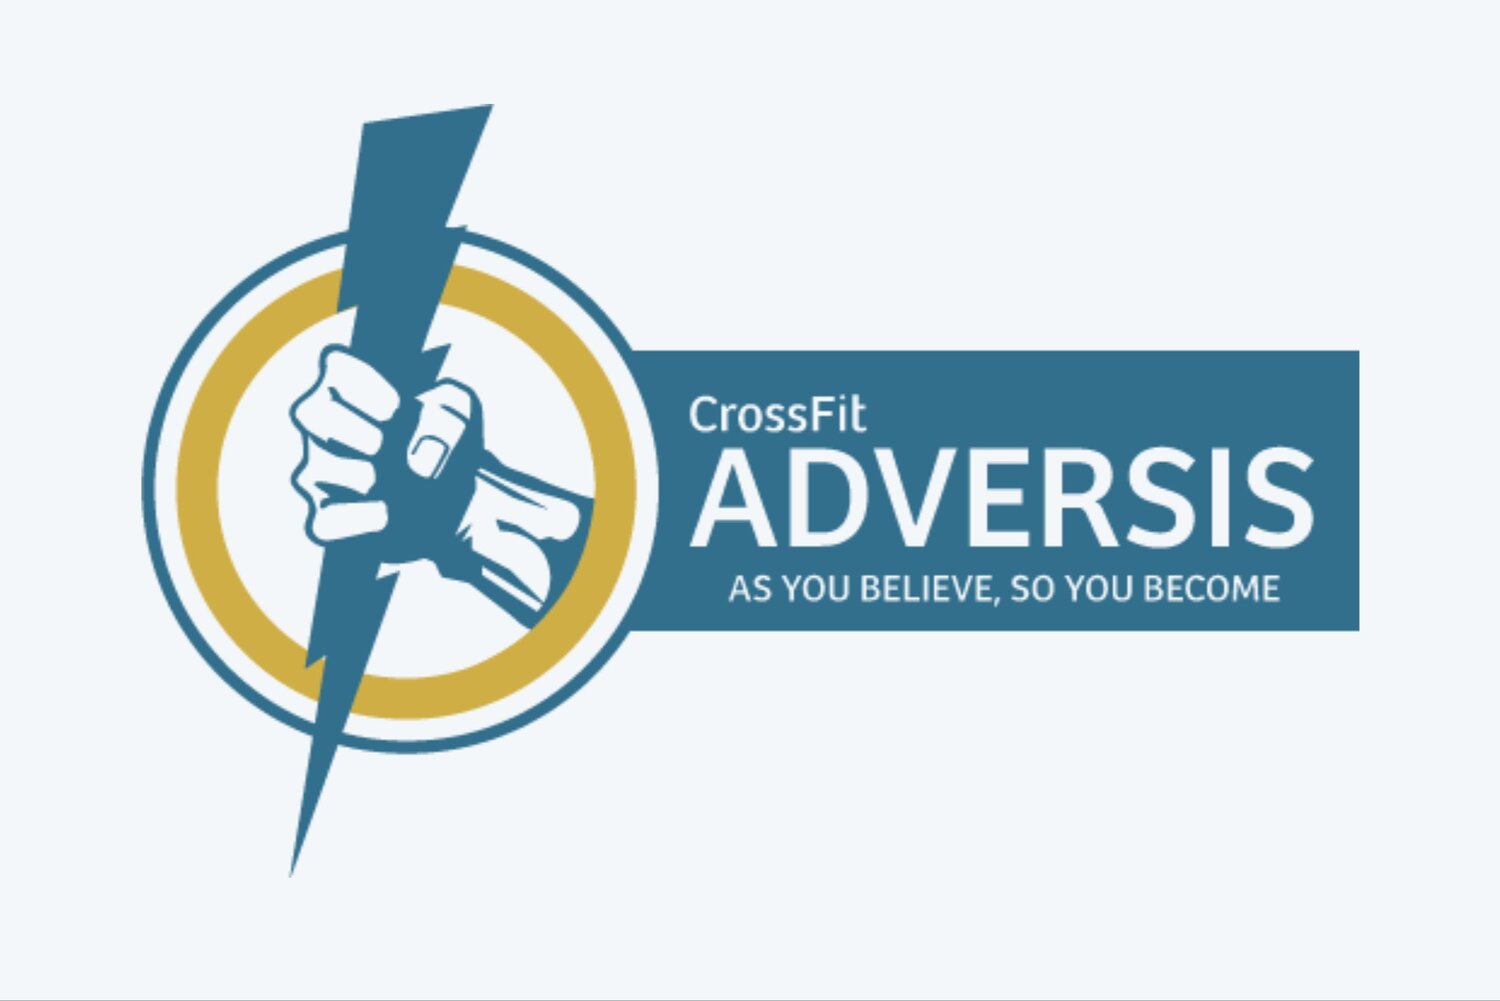 CrossFit Adversis